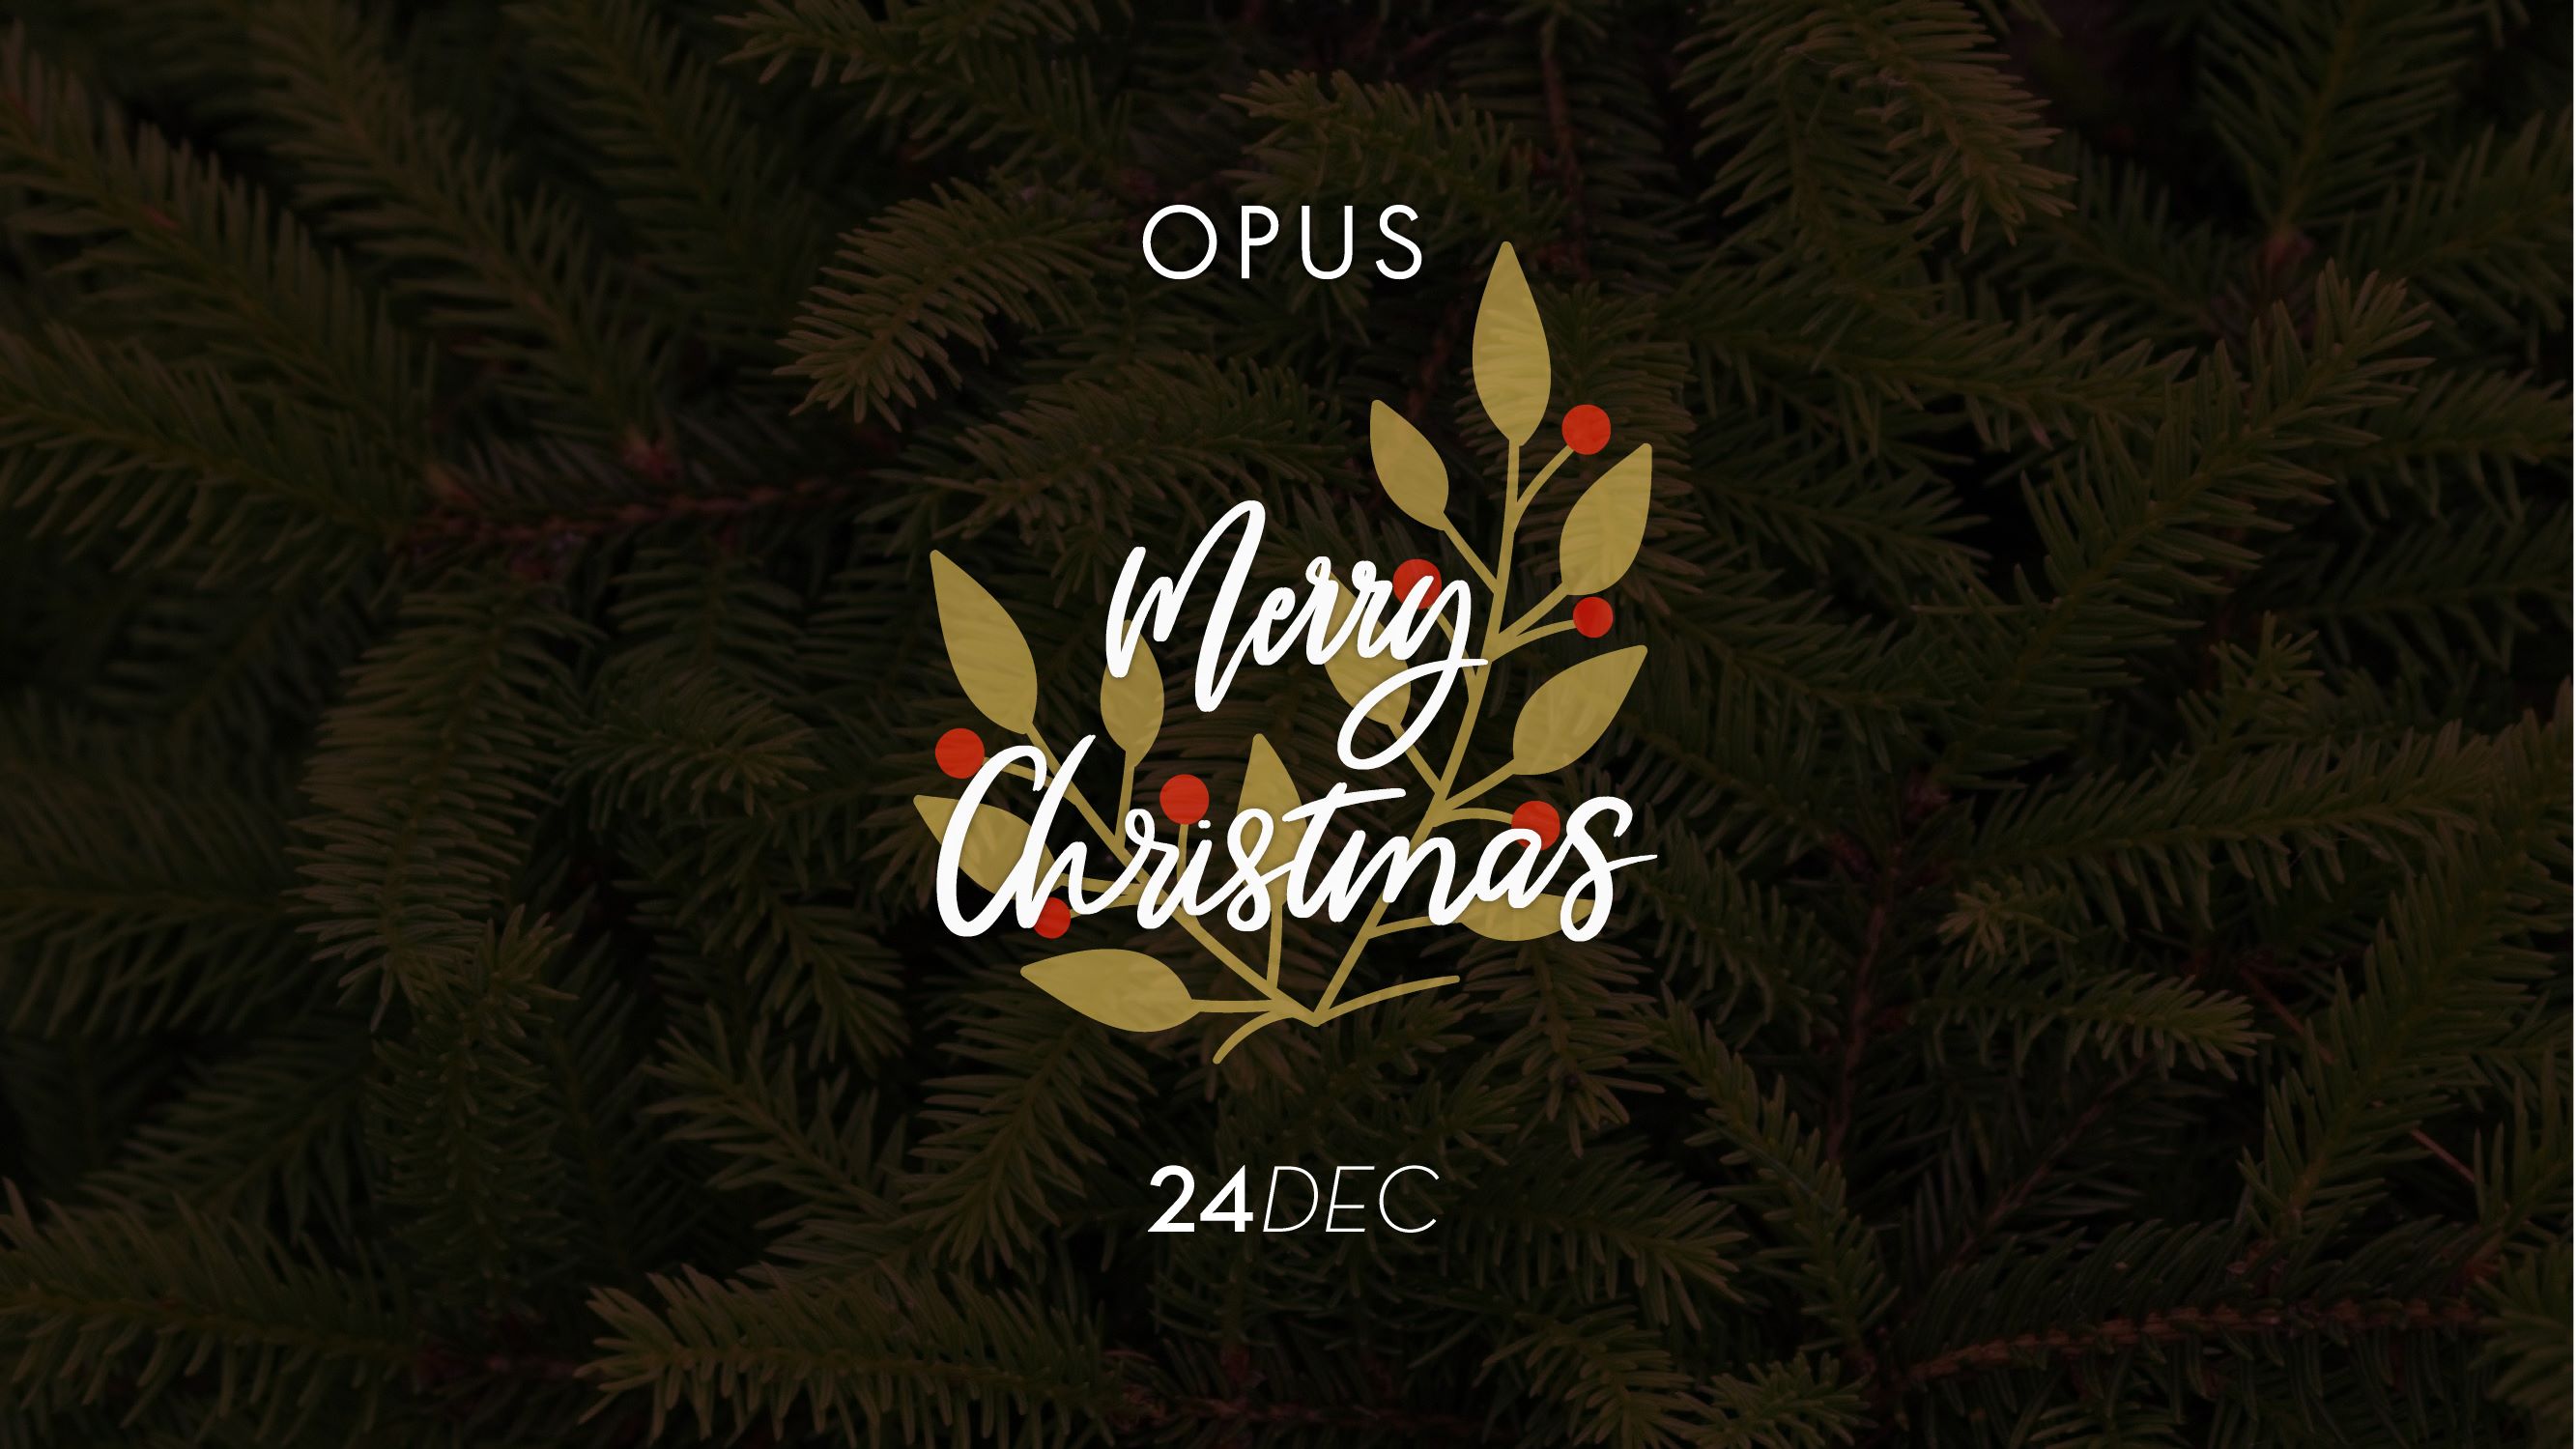 Παραμονή Χριστουγέννων στο Opus